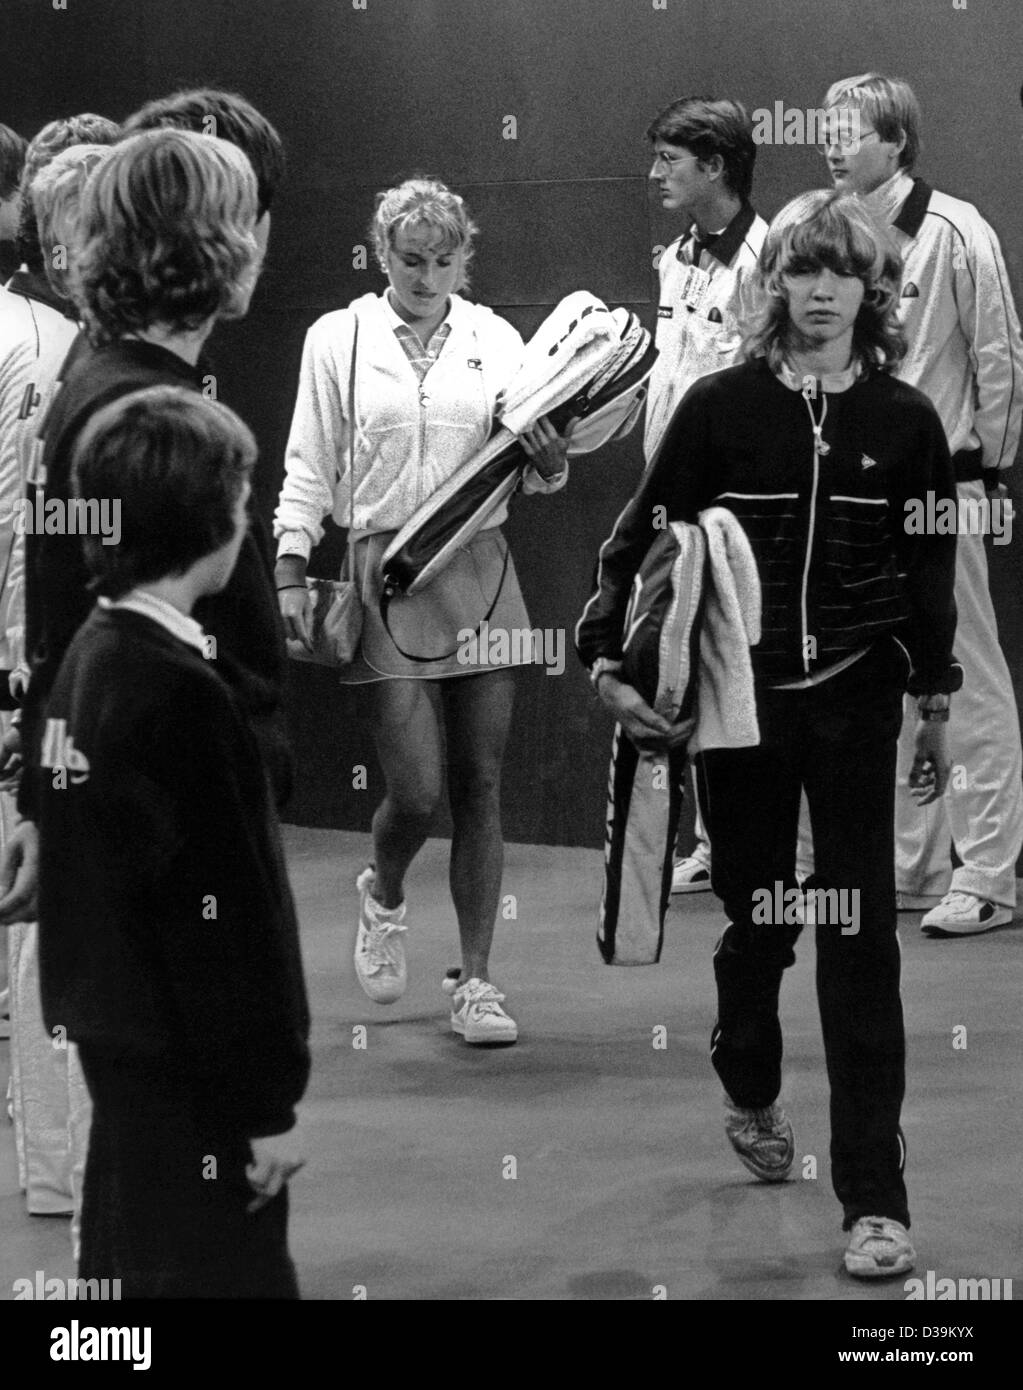 (Dpa) - 13-anno-vecchio Steffi Graf arriva sicuro di sé a una partita a tennis contro American Tracy Austin a Filderstadt vicino a Stoccarda, Germania, 18 ottobre 1982. Alcuni anni più tardi l'adolescente stella del tennis è diventato il mondo il numero 1 femmina giocatore di tennis. Foto Stock